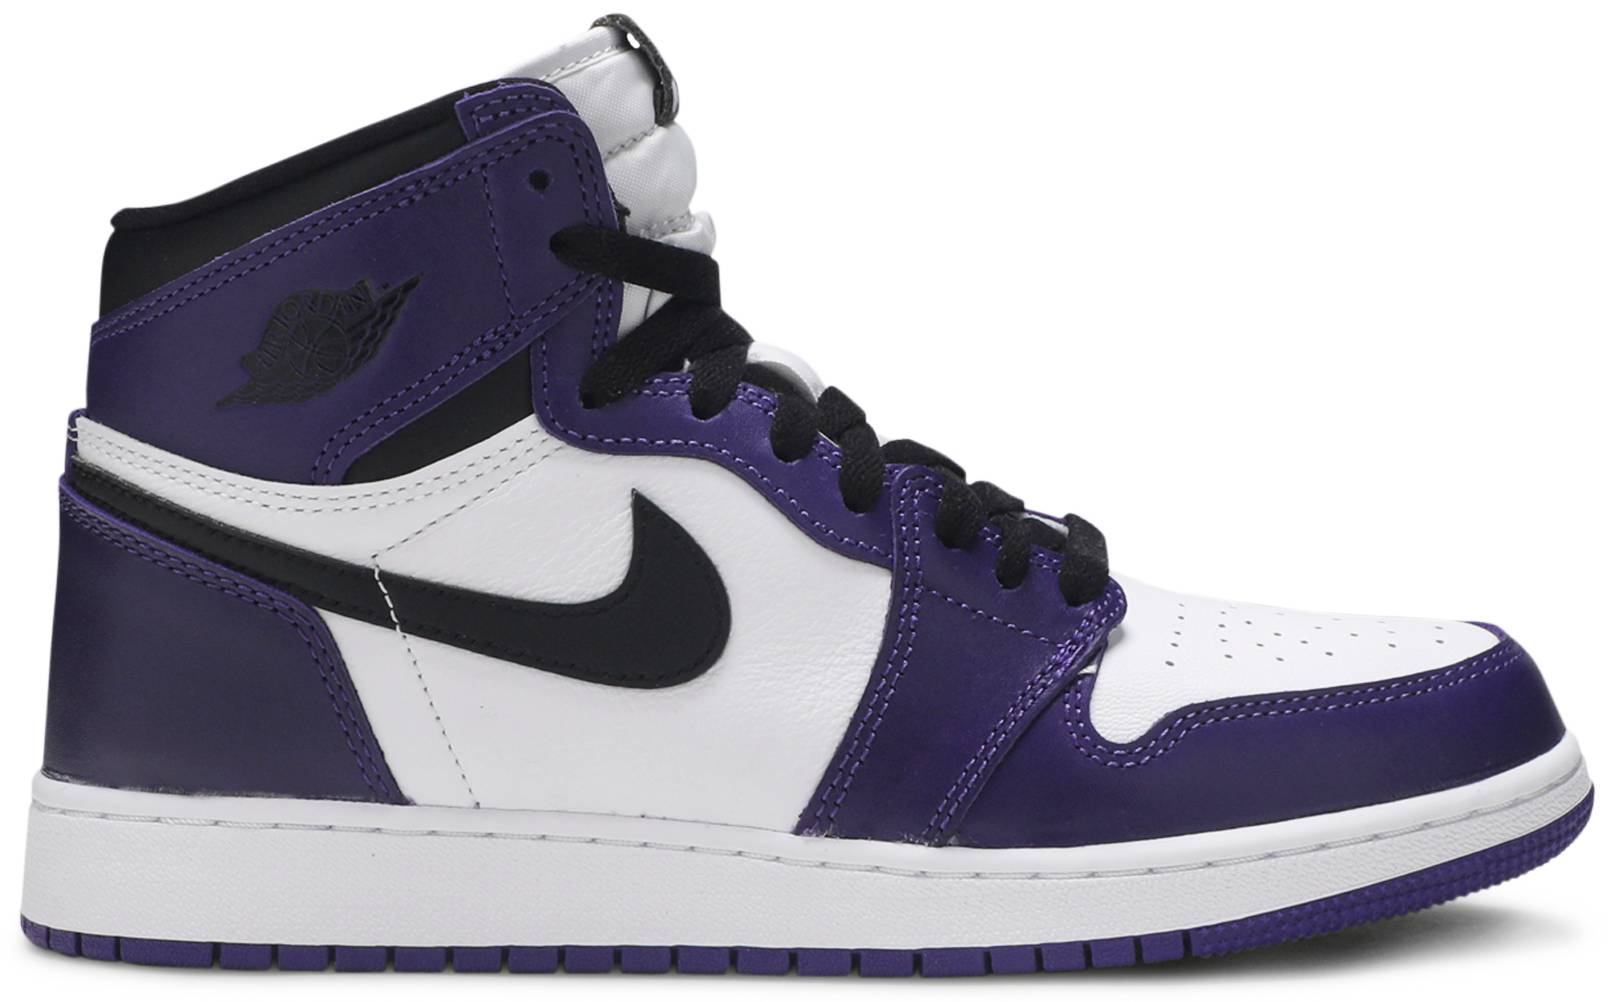 Jordan 1 High "Court Purple" GS